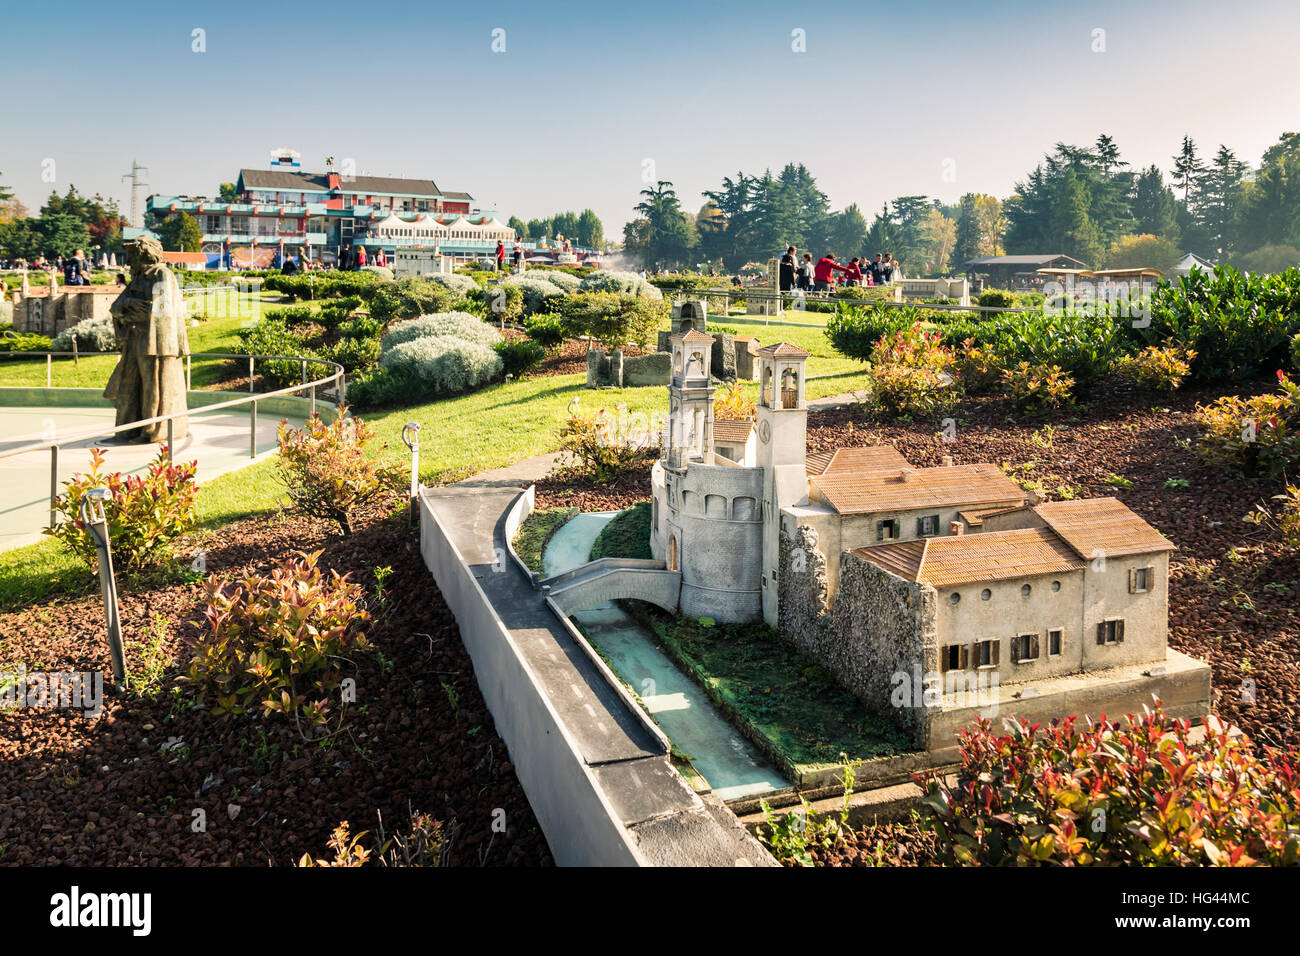 Bergamo, Italia - 30 Ottobre 2016: Leolandia è un parco di divertimenti famoso per la riproduzione in miniatura di Italia con 160 riproduzioni in scala di famou Foto Stock